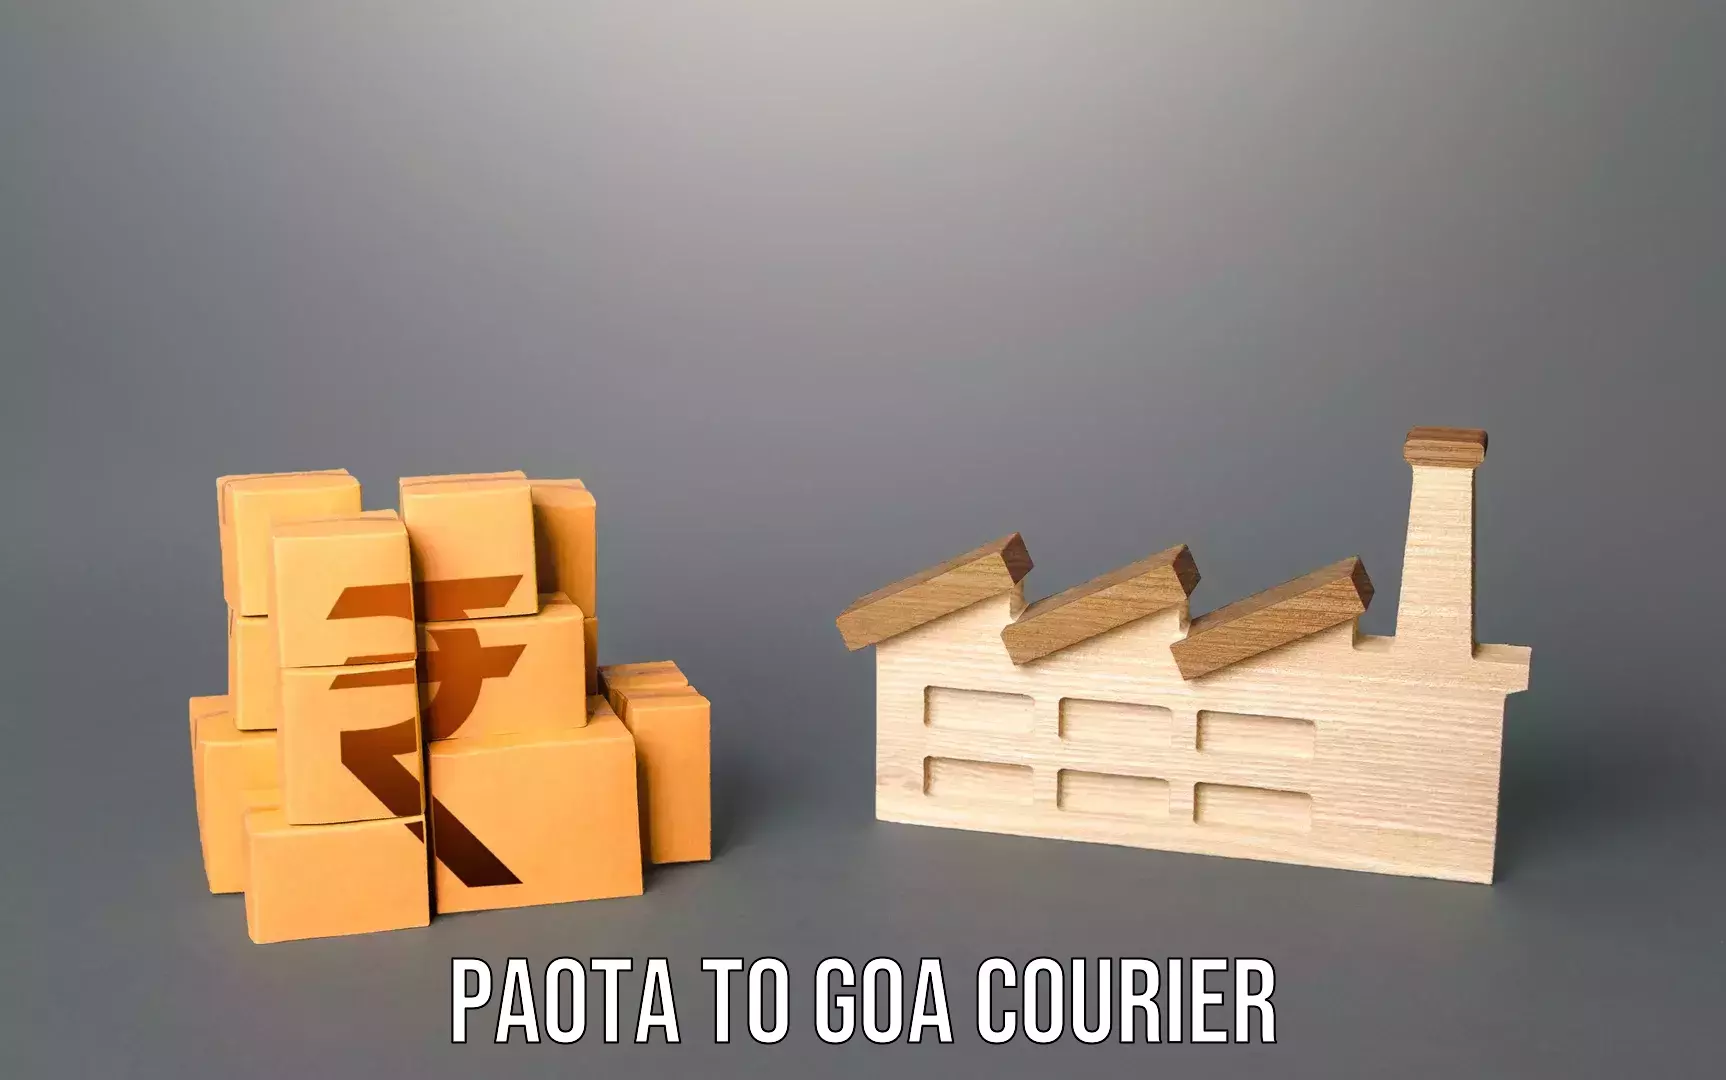 Door-to-door baggage service Paota to Goa